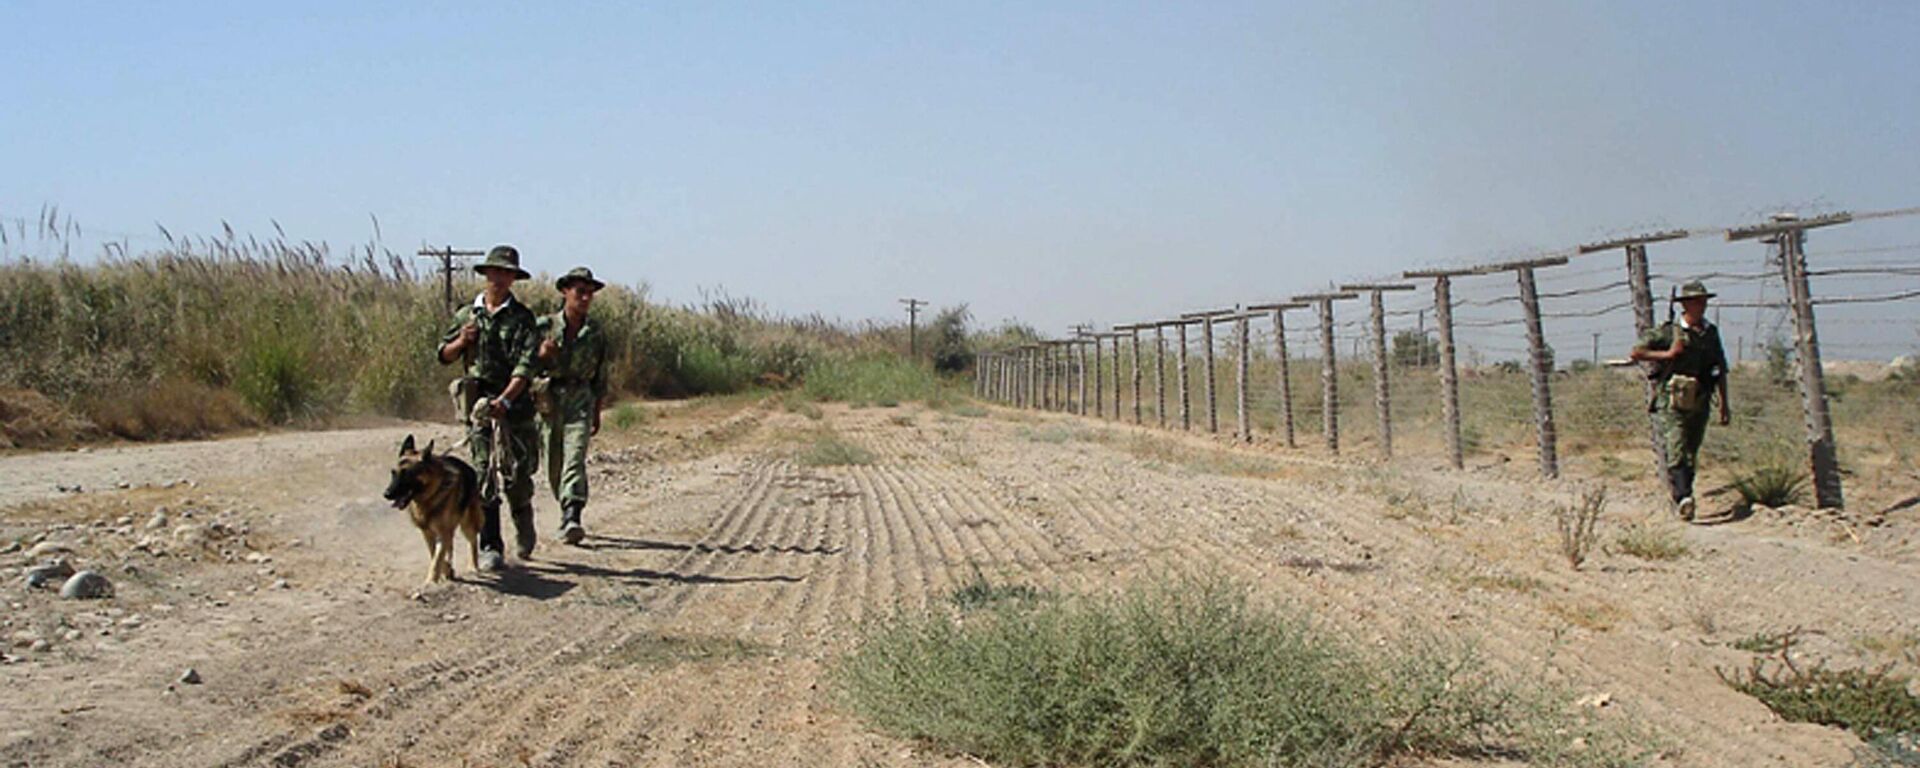 Таджикские пограничники на границе с Афганистаном - Sputnik Ўзбекистон, 1920, 23.06.2021